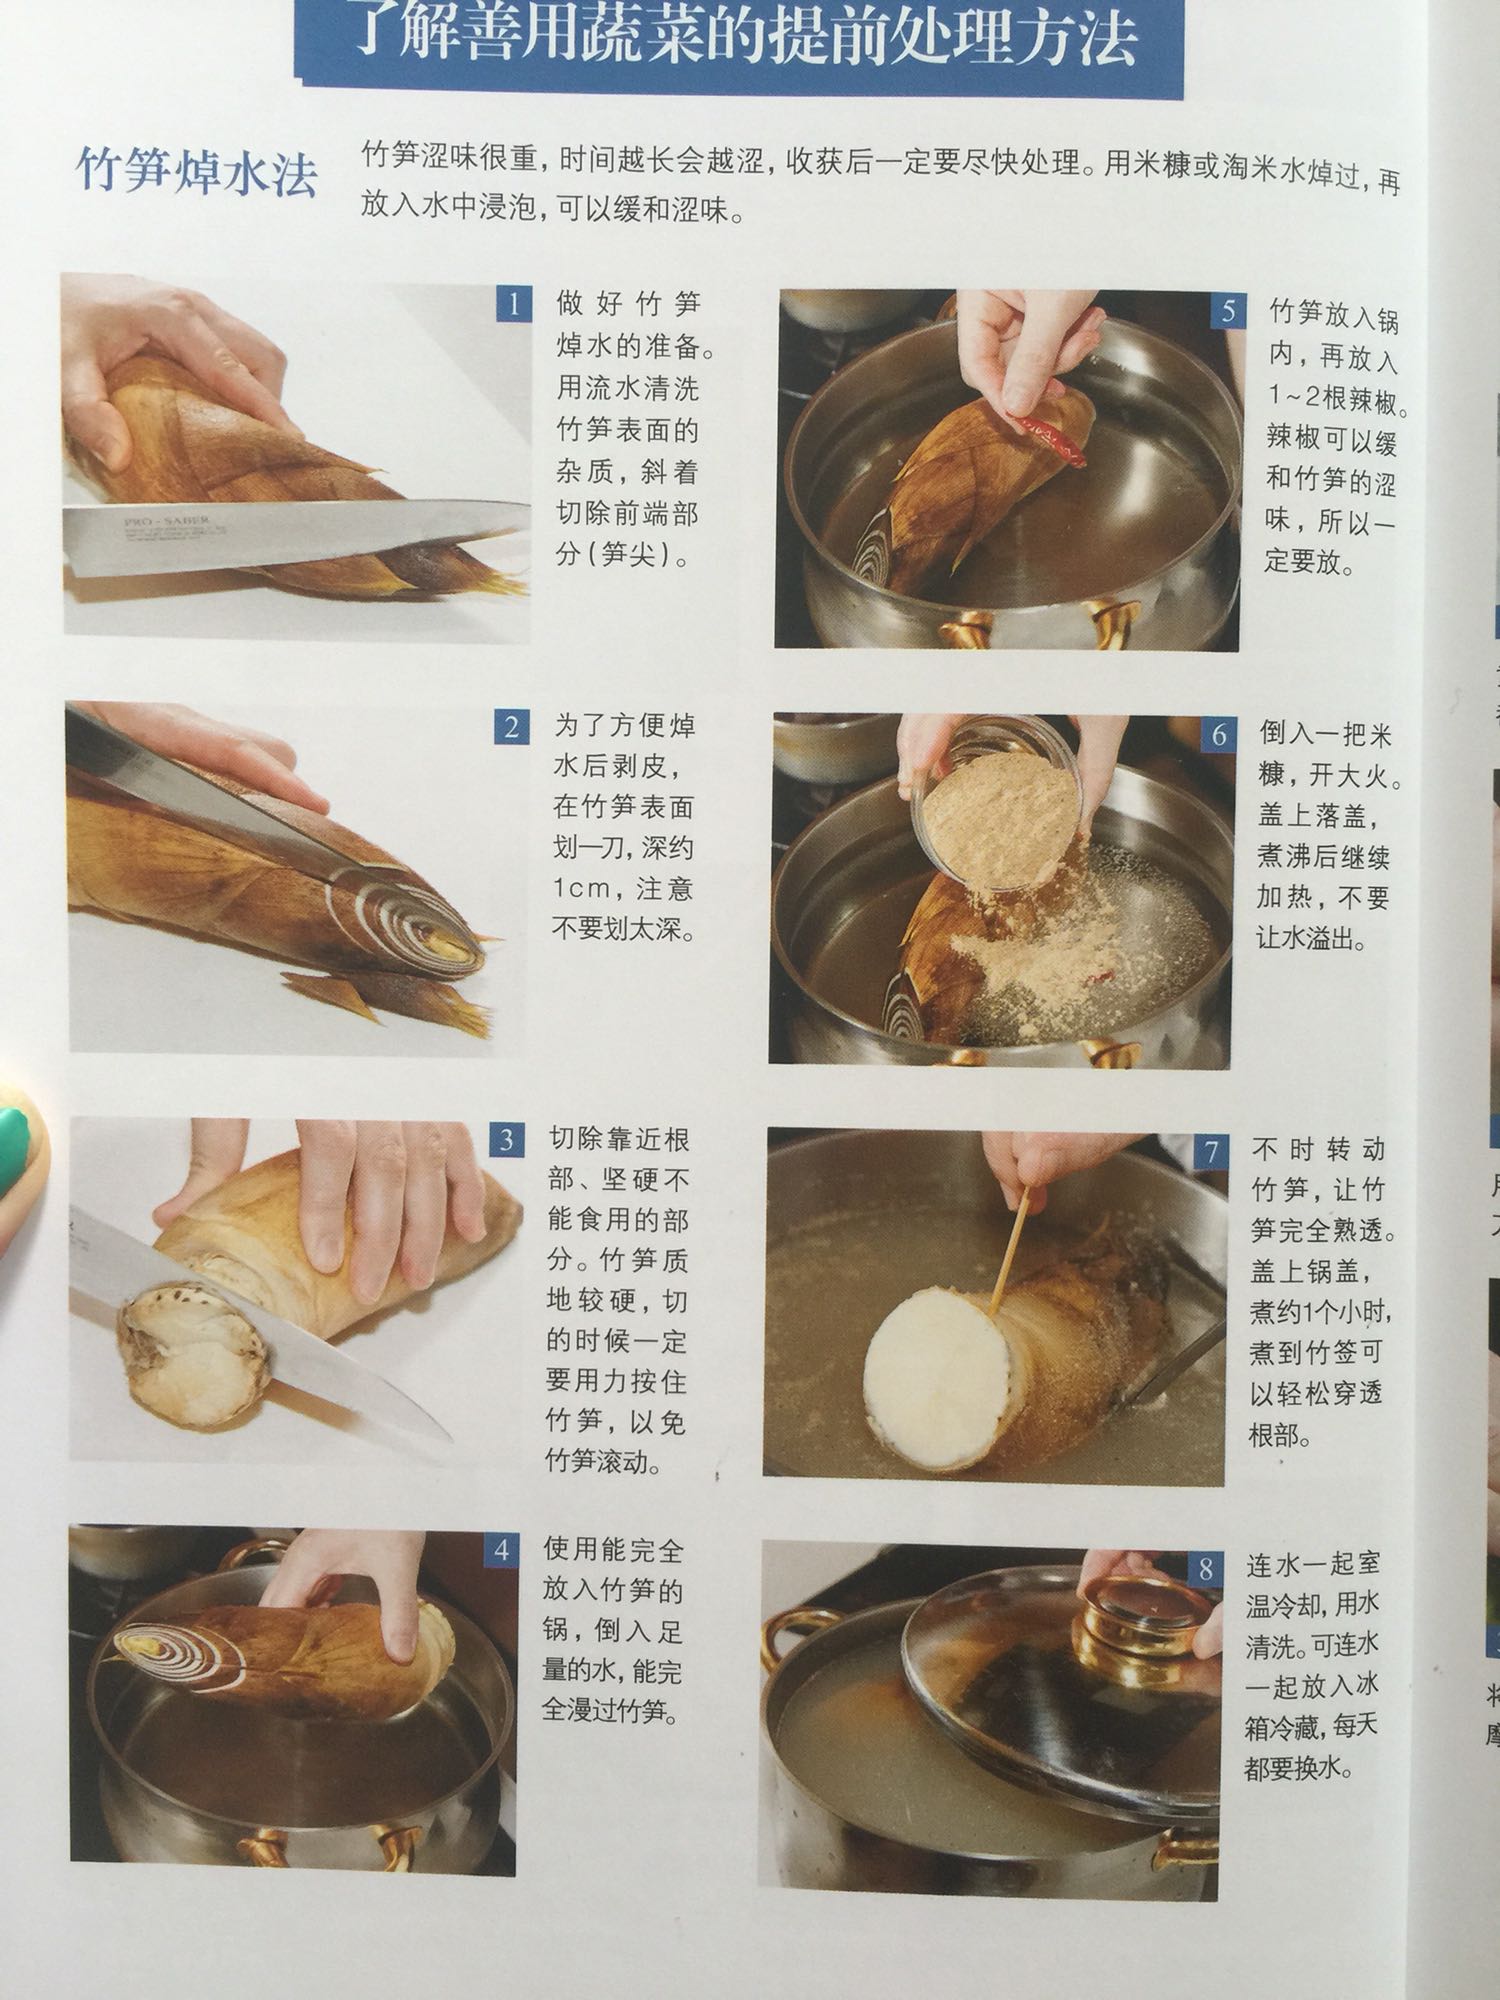 超级实用的一本书，就算不做日本料理，里面讲的很多知识，怎么蒸出好吃的米饭，如何处理蔬菜，如何处理海鲜，如何摆盘，如何对对颜色进行搭配，这些知识在任何料理中都是可以用到的。还有很多烹饪时候的小窍门，大大提高烹饪水平。这么便宜，图片丰富，步骤明确，讲得那么详尽，真的是良心作品。